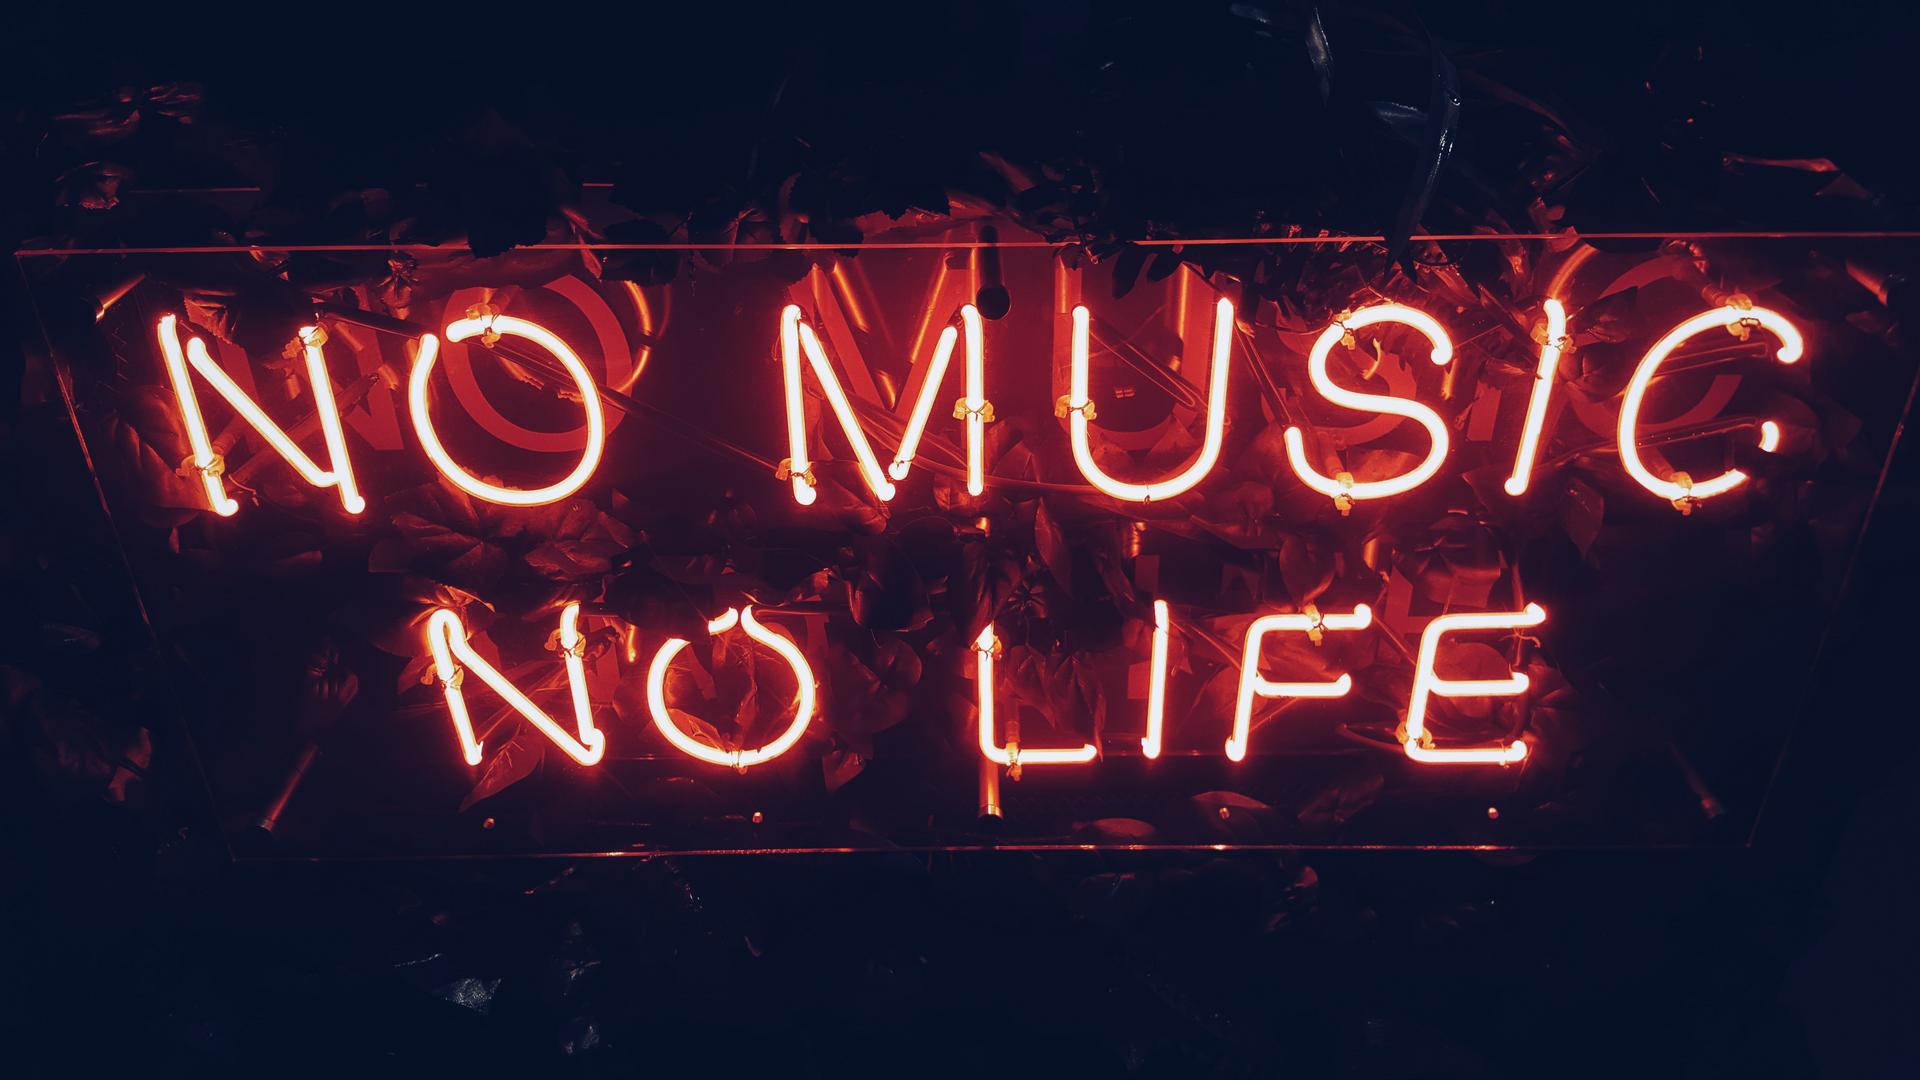 Neonschriftzug "no music no life"